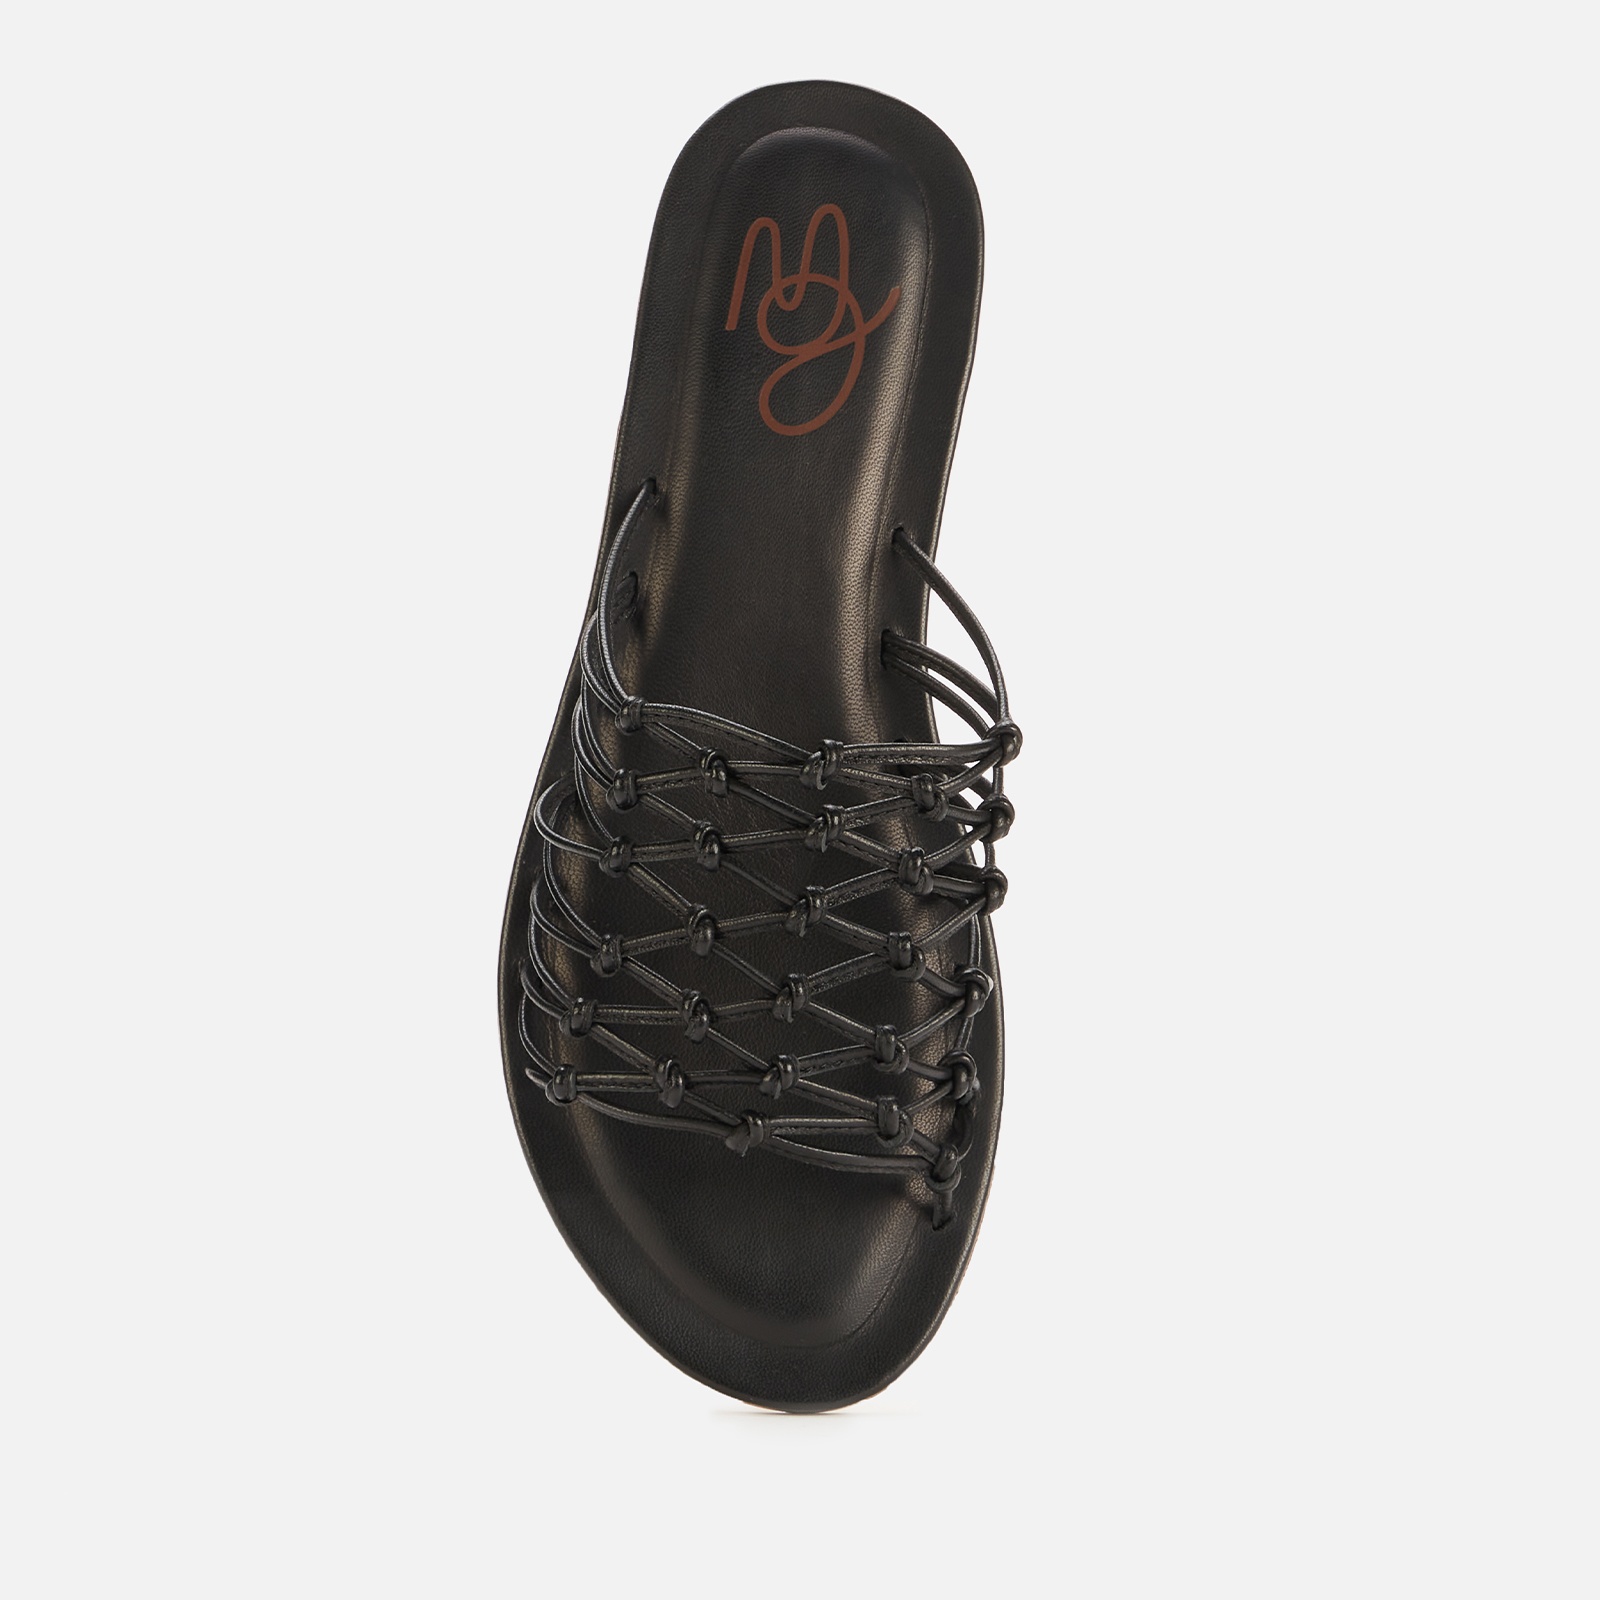 Mansur Gavriel Women's Mignon Leather Slide Sandals - Black - 3